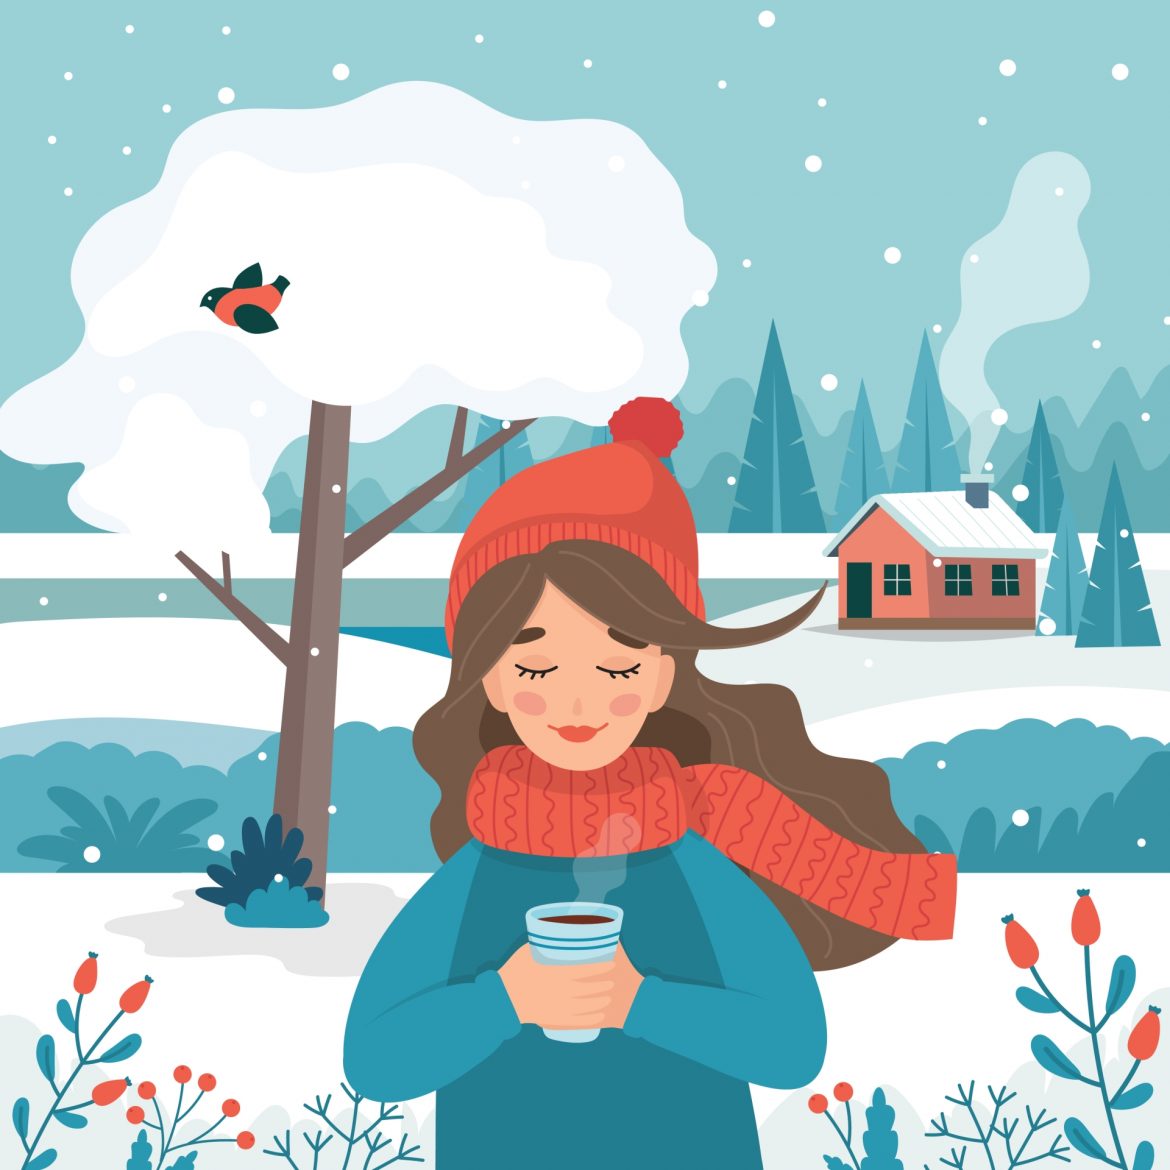 Dobre wei qi w zimie – jak wzmocnić odporność według medycyny chińskiej? Ilustracja przedstawiająca dziewczynę w czerwonej czapce i szaliku z kubkiem gorącej herbaty w ręku w otoczeniu zimowego krajobrazu.